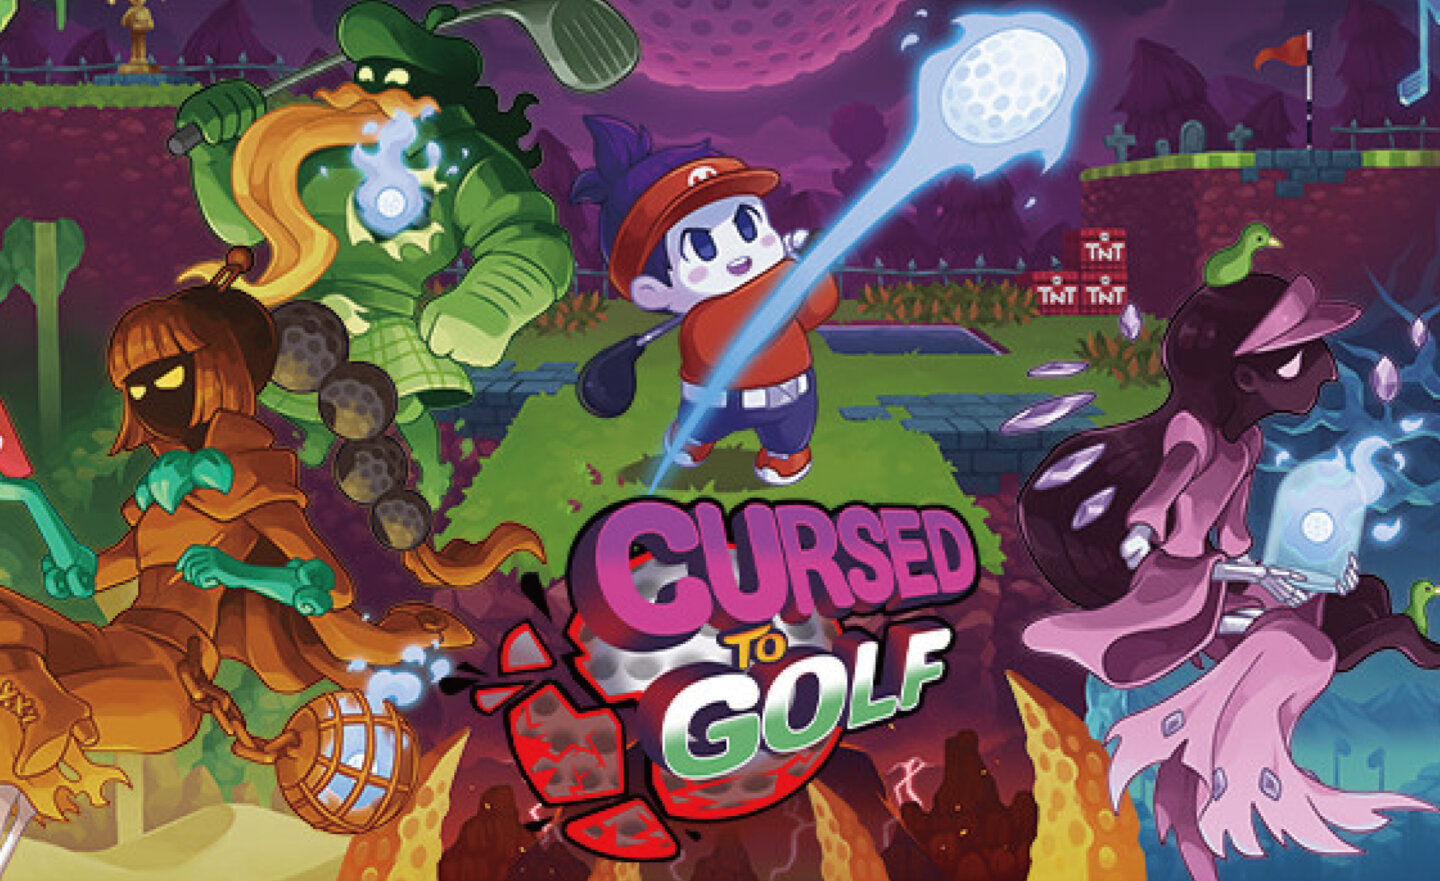 【限時免費】Roguelike 遊戲《Cursed to Golf 高爾夫詛咒》快閃放送，2023 年 12 月 29日凌晨 00:00 截止